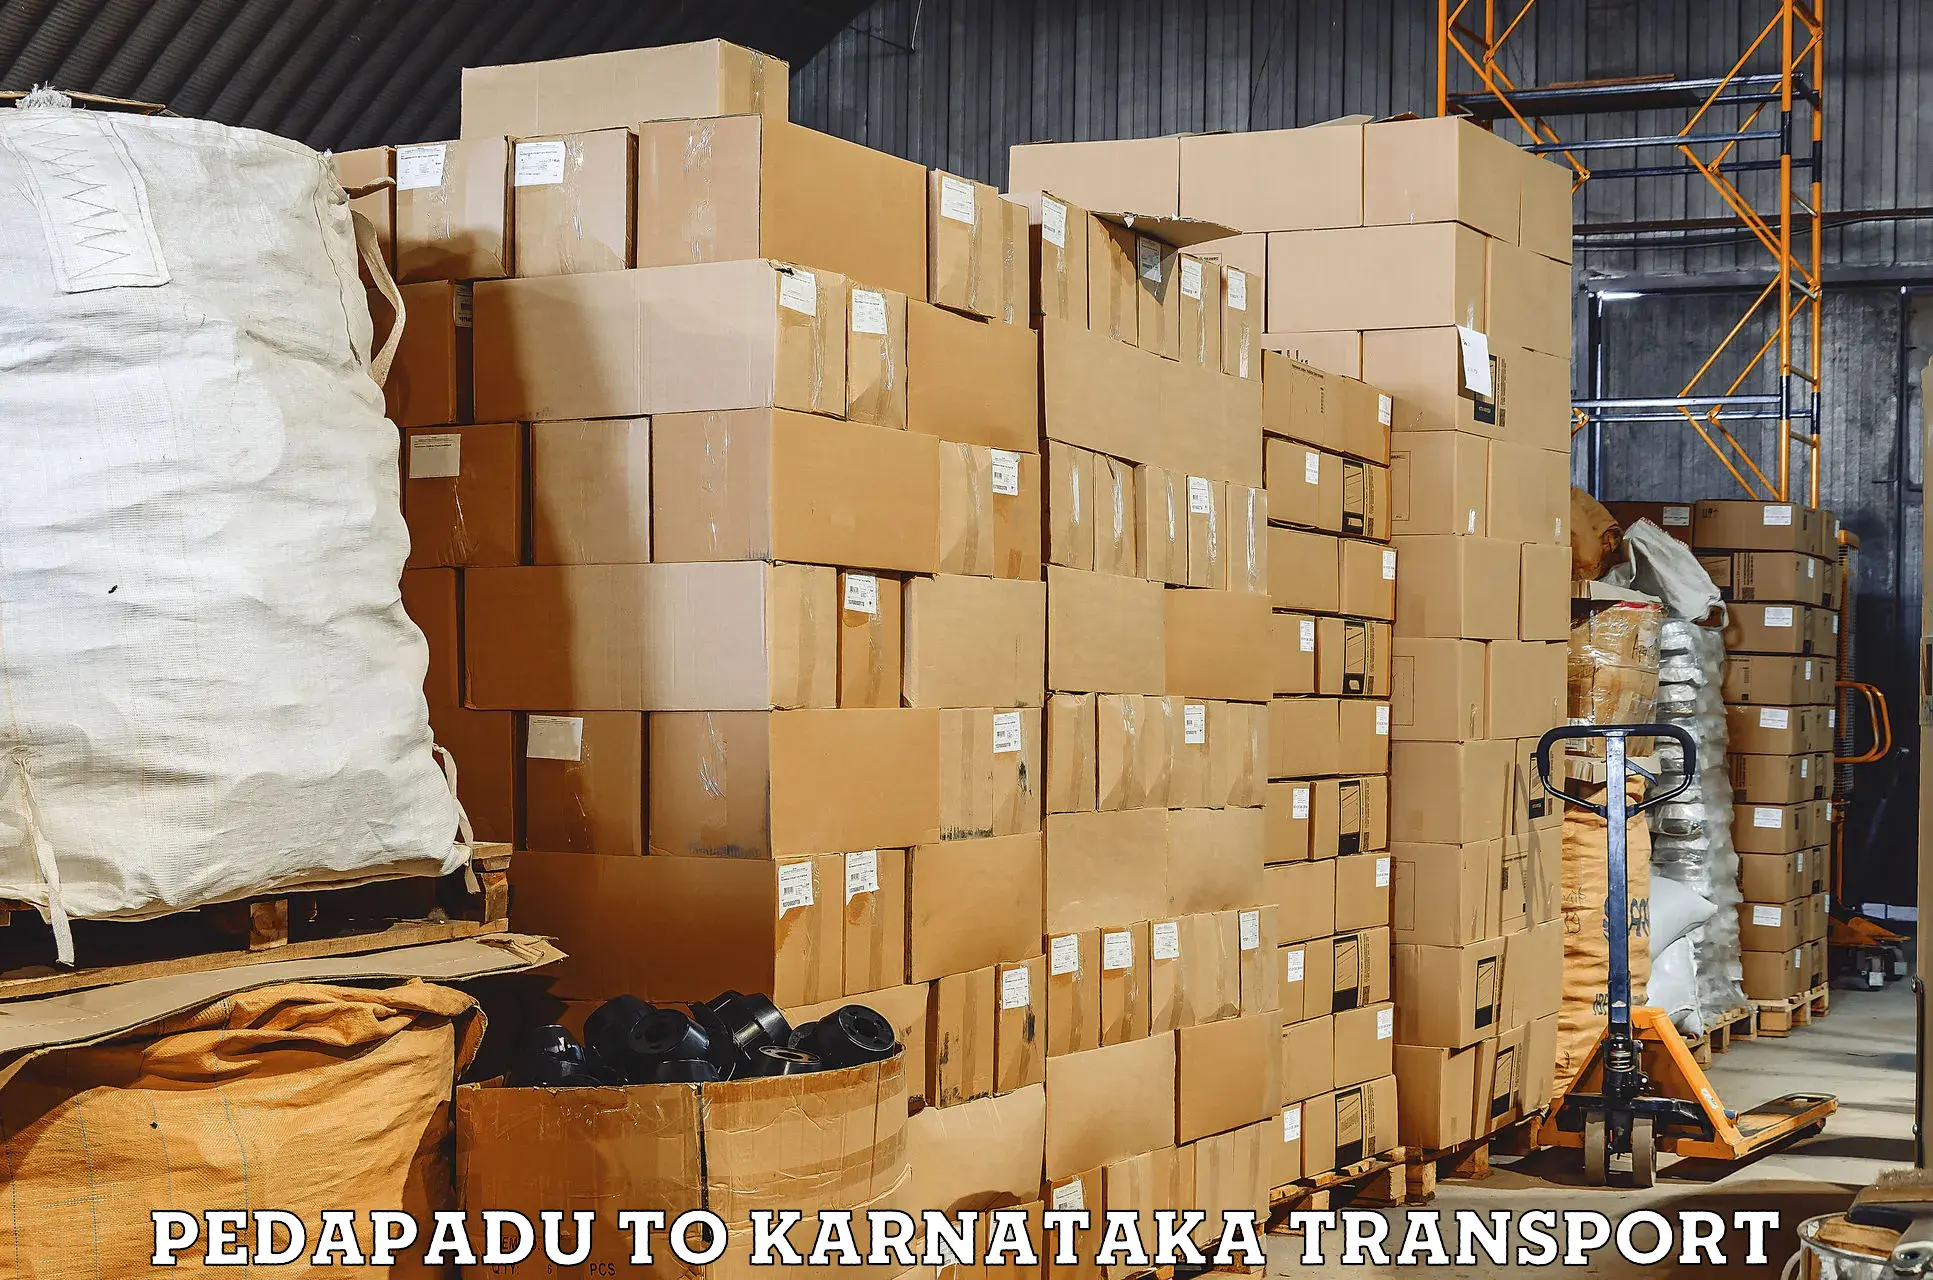 Air cargo transport services Pedapadu to Eedu